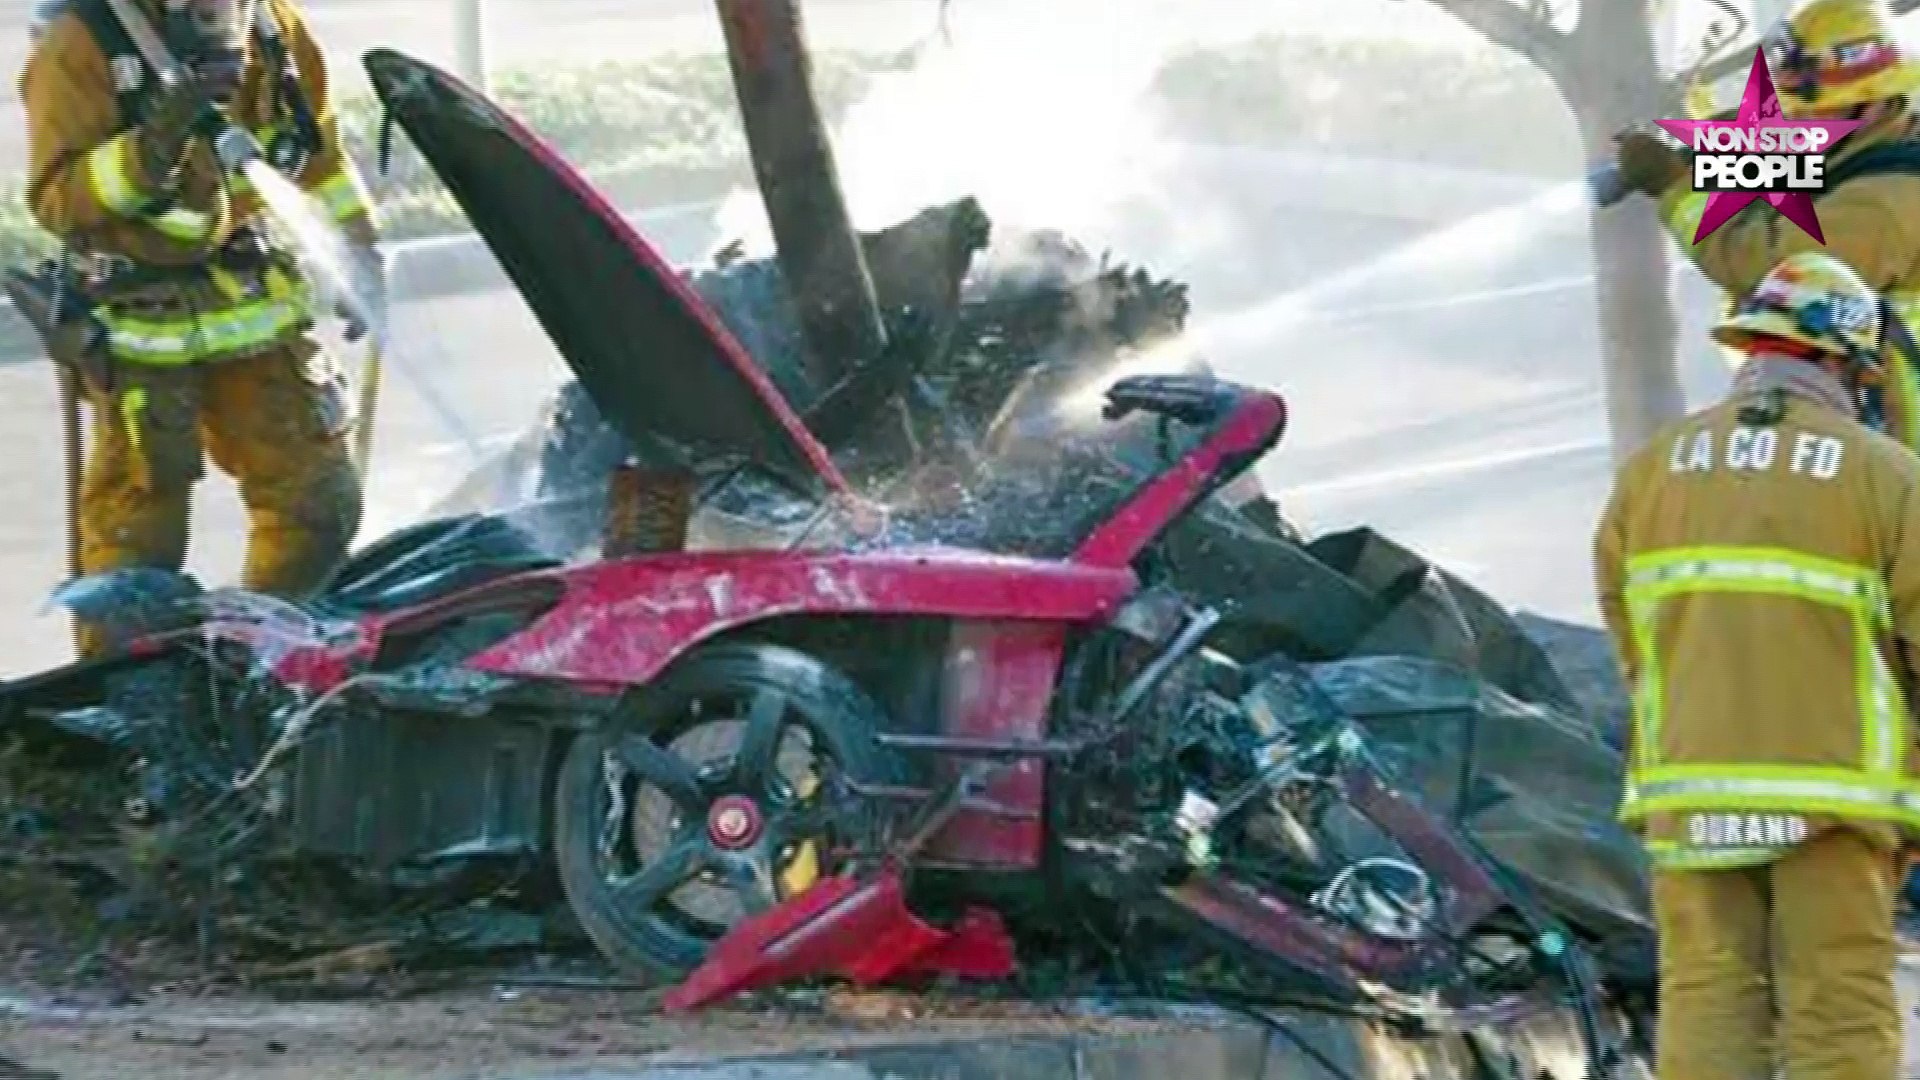 Deter gazon Bungalow Paul Walker mort dans une Porsche : la marque aurait profité du drame  (vidéo) - Vidéo Dailymotion